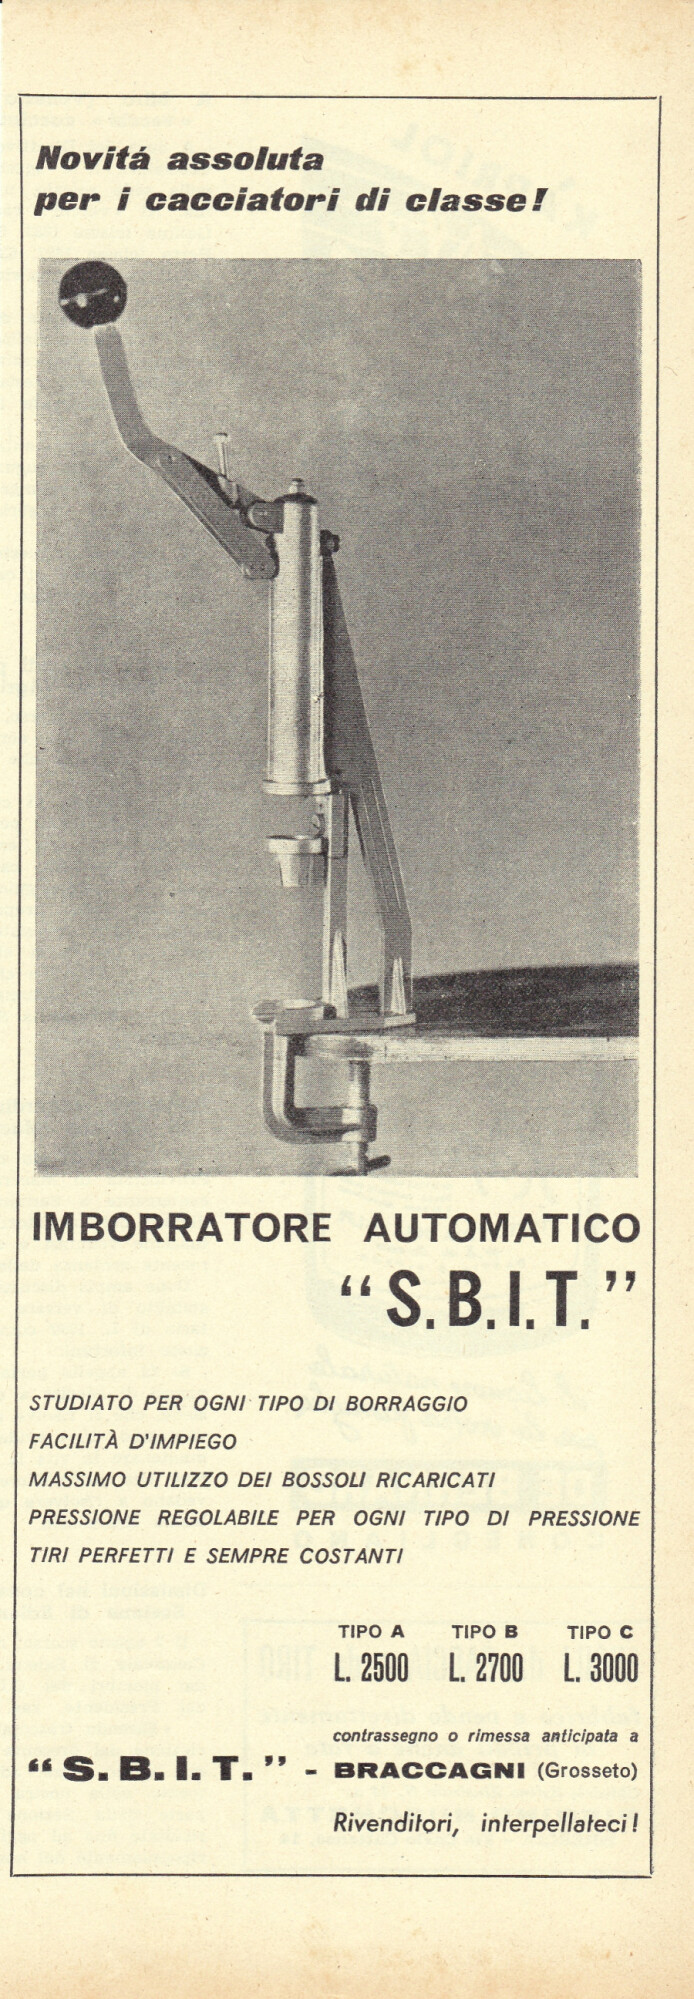 SBIT imborratore automatico. Advertising 1962